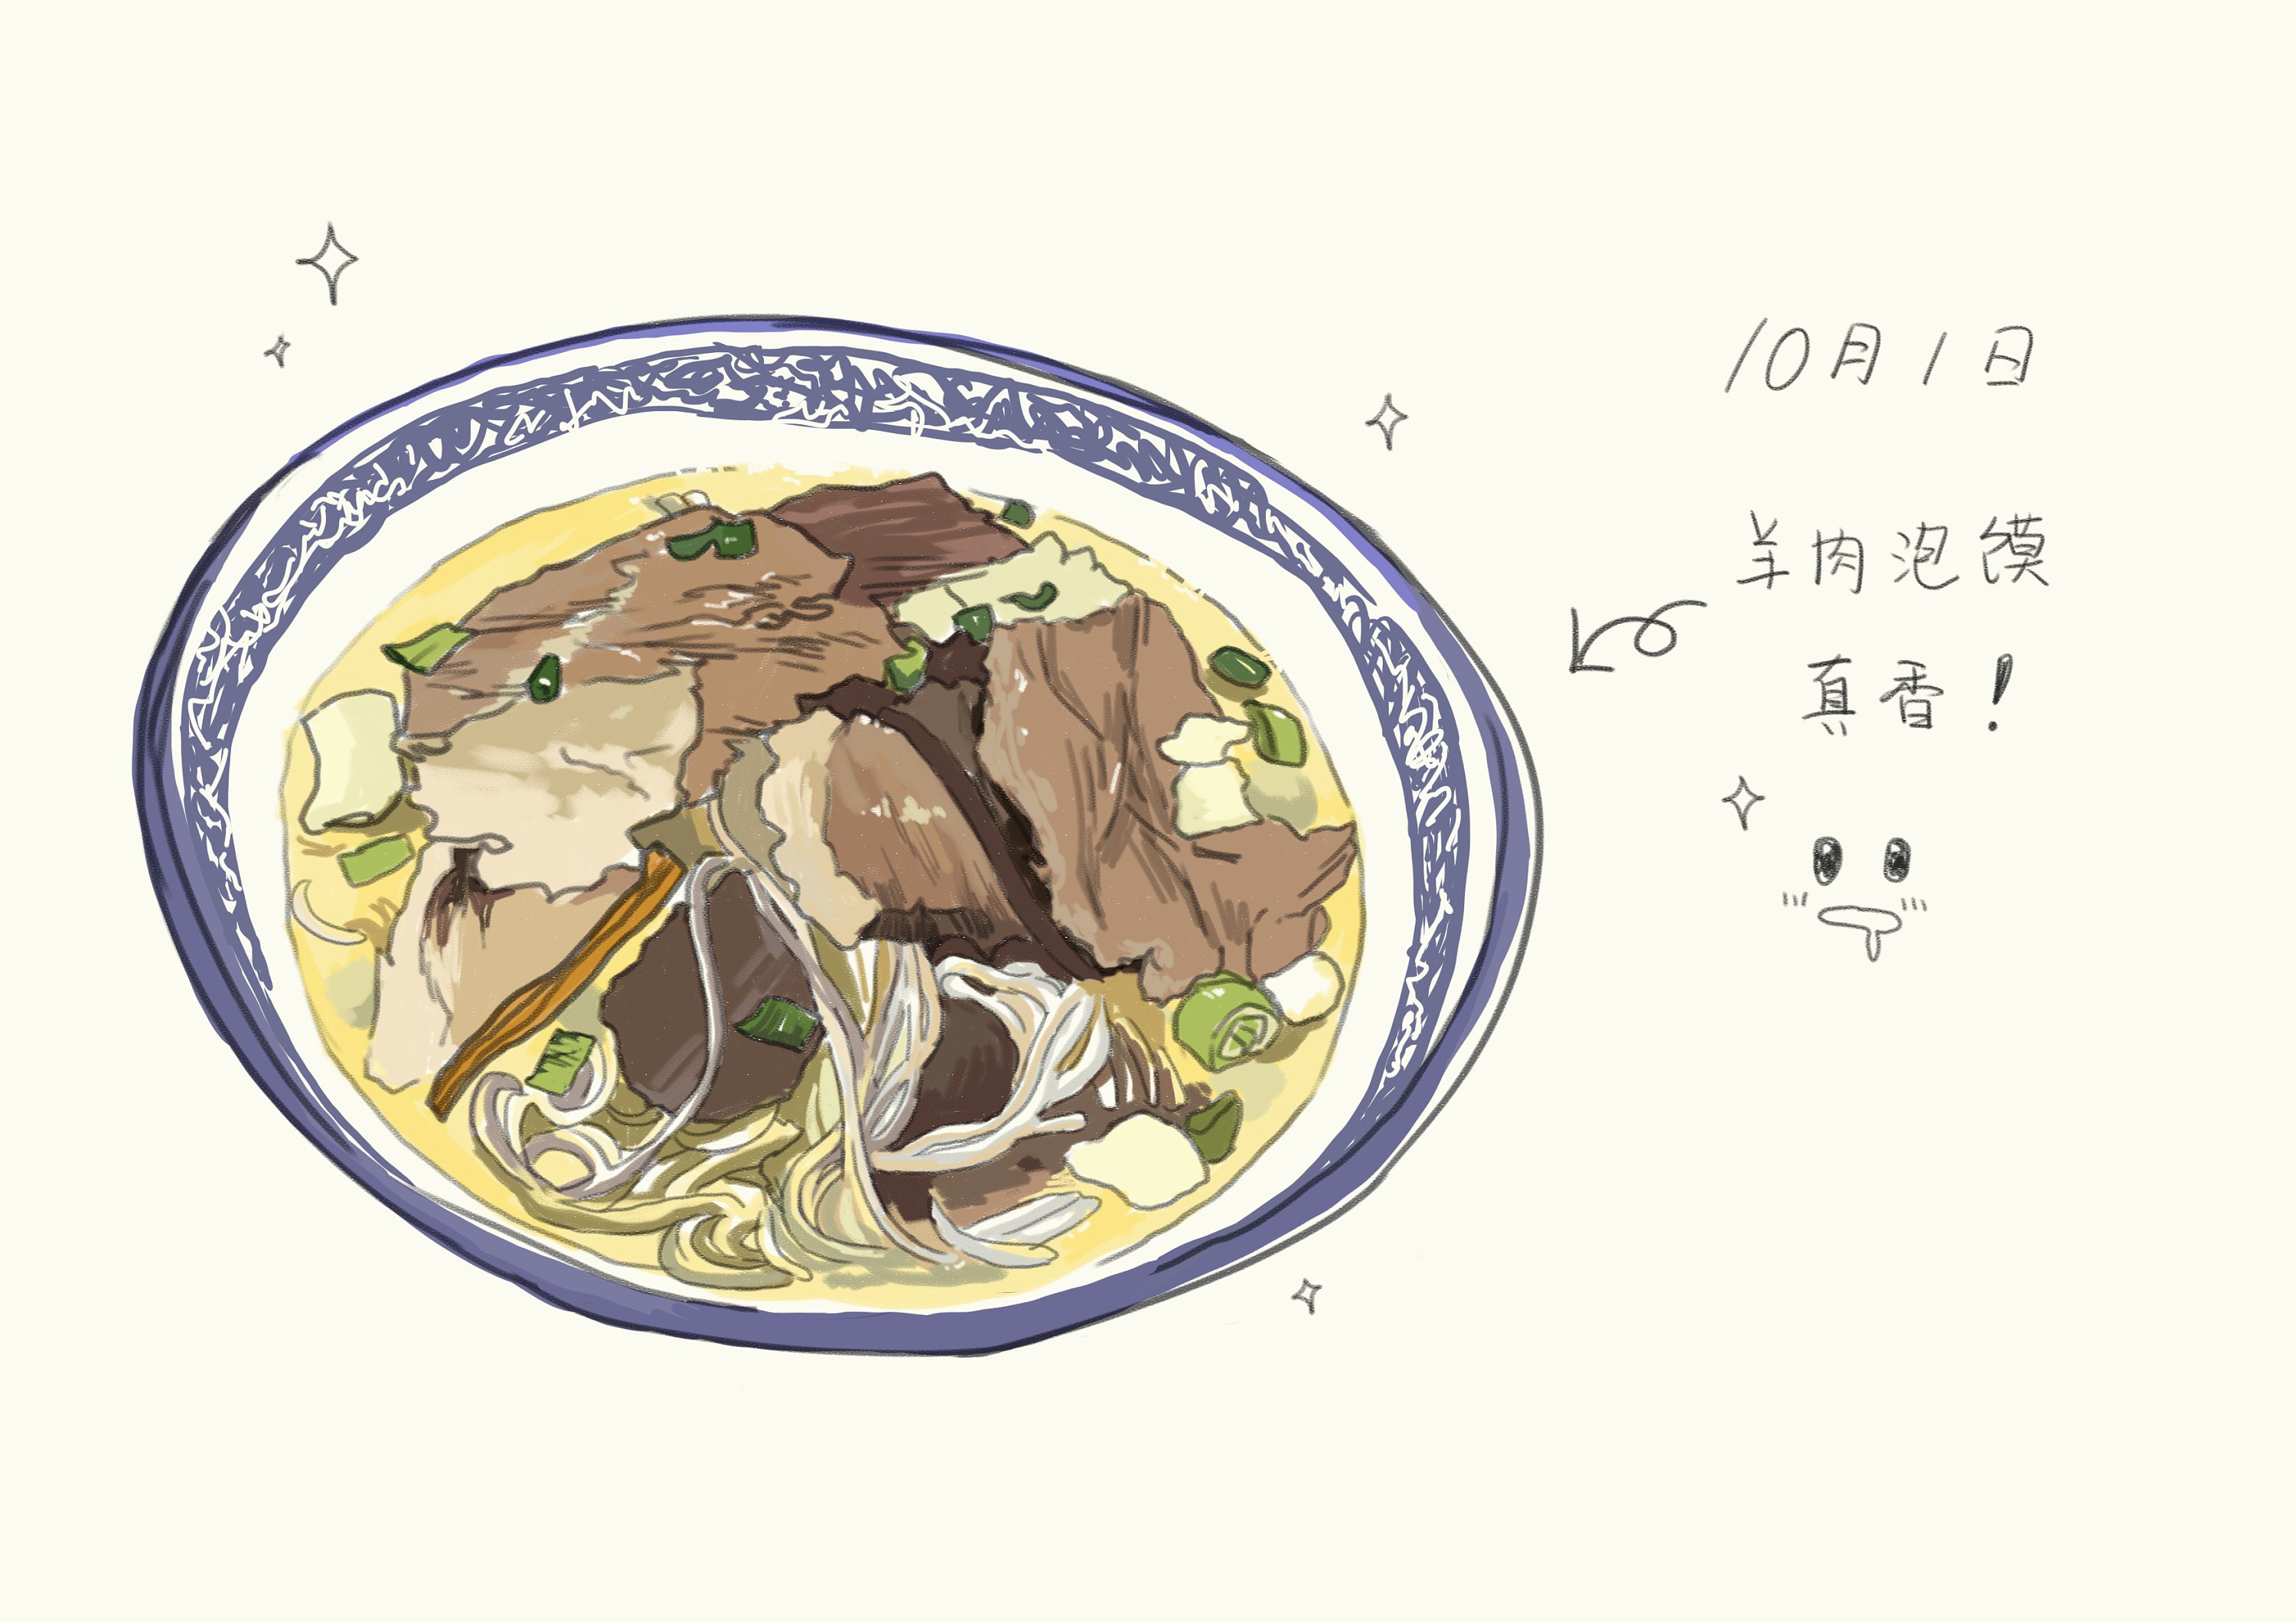 西安羊肉泡馍简笔画图片